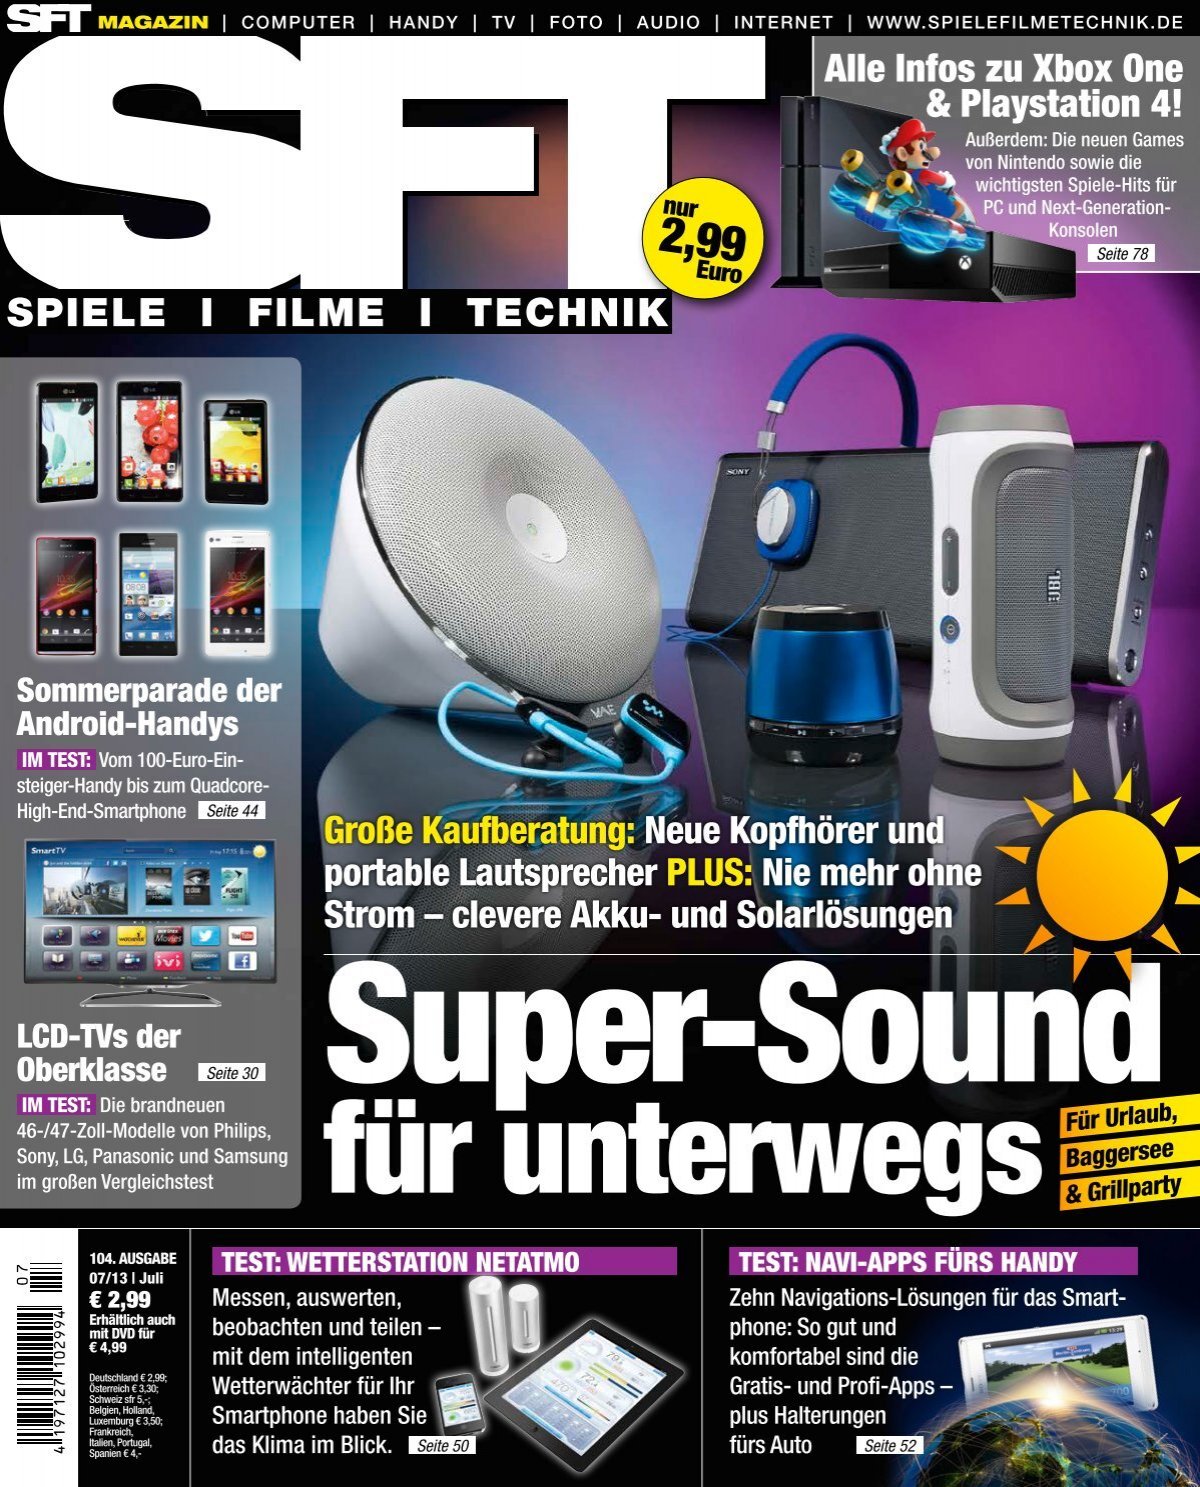 SFT – Spiele Filme Technik - Magazin Super-Sound für unterwegs